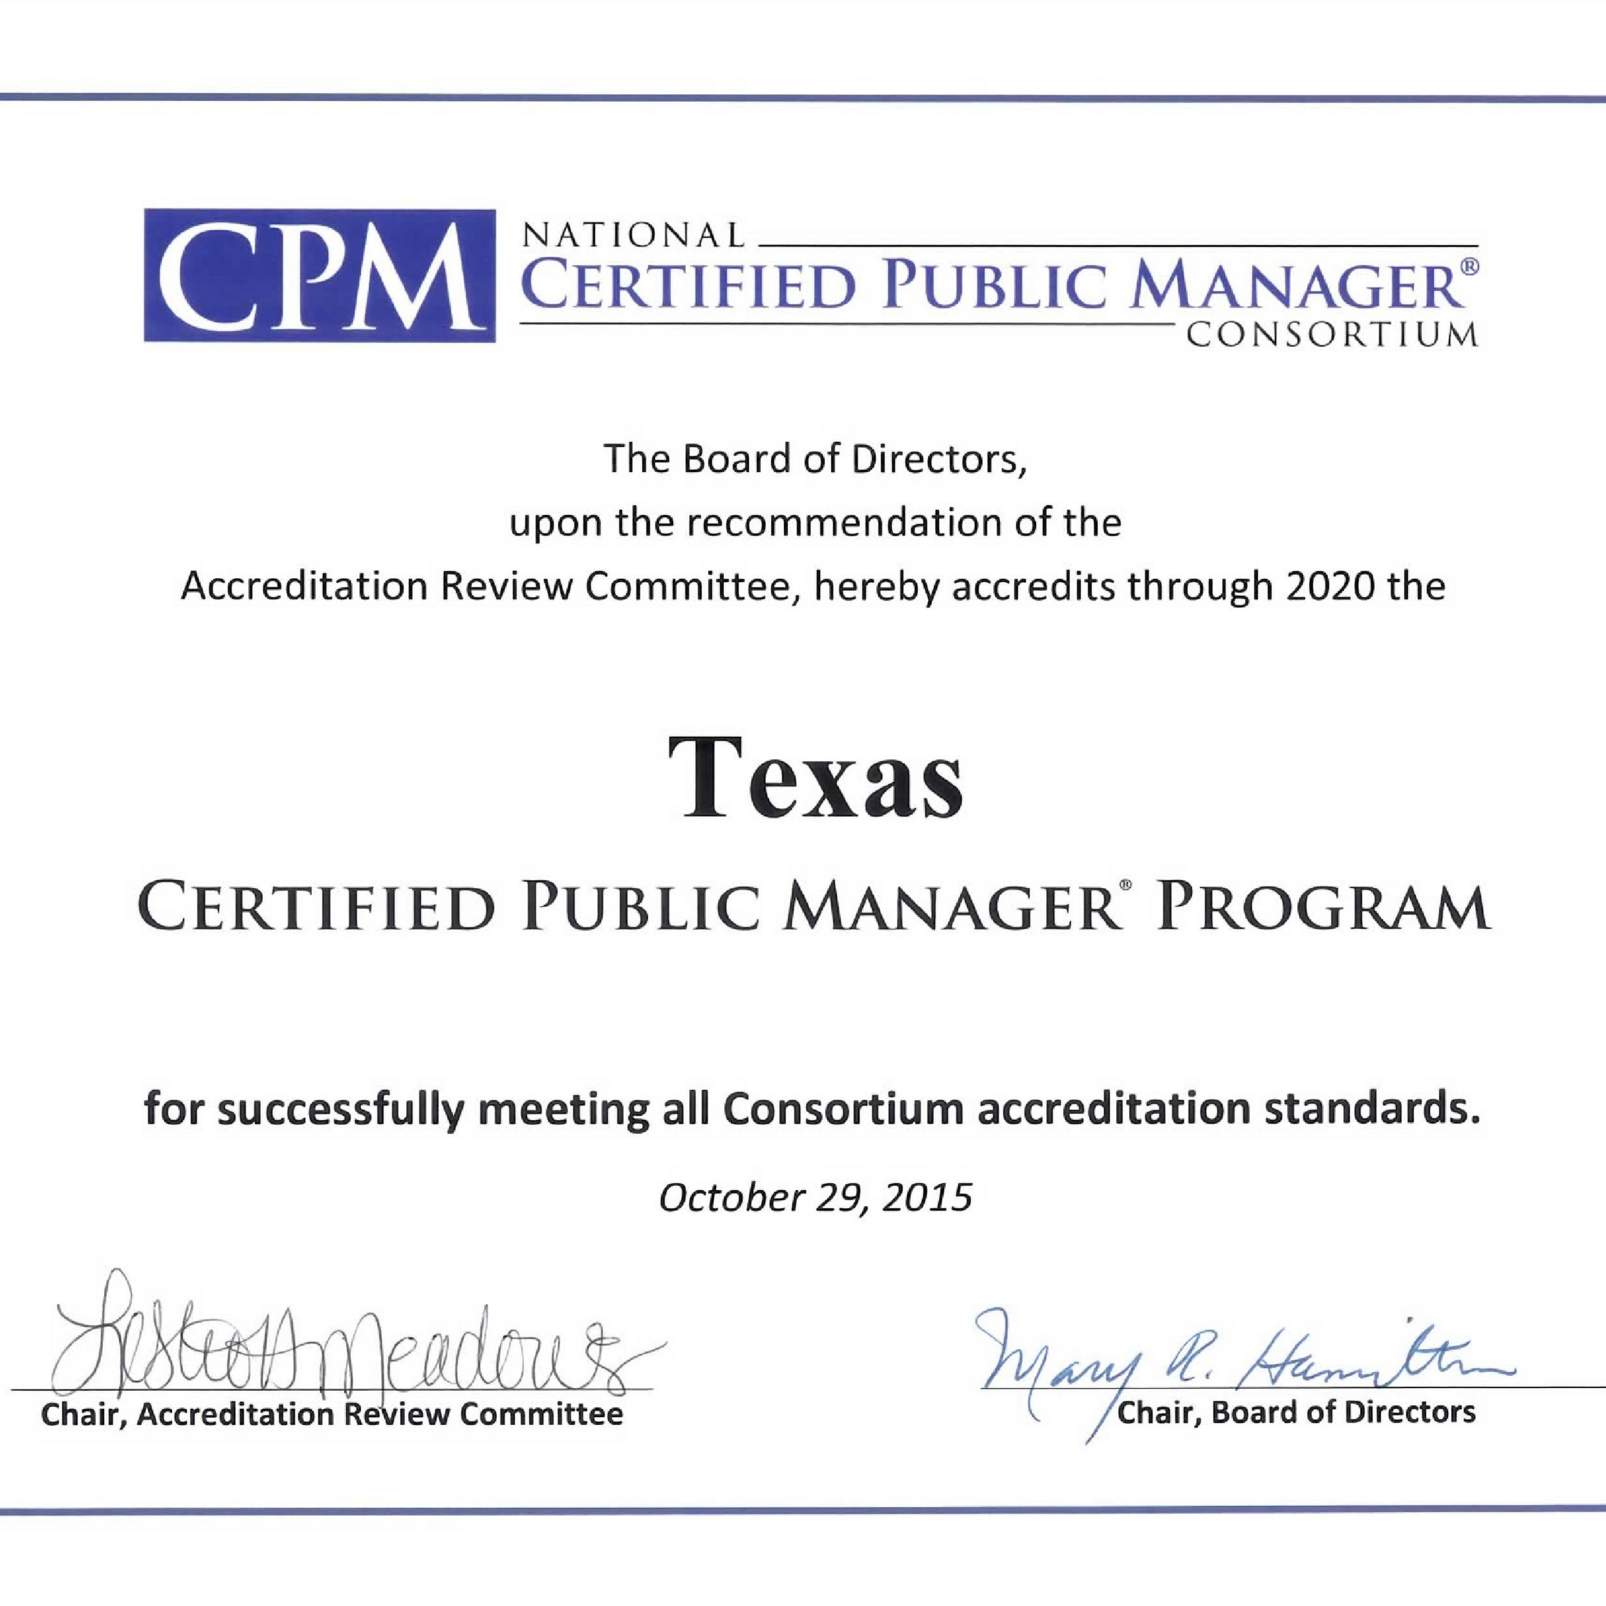 CPM Consortium Certificate